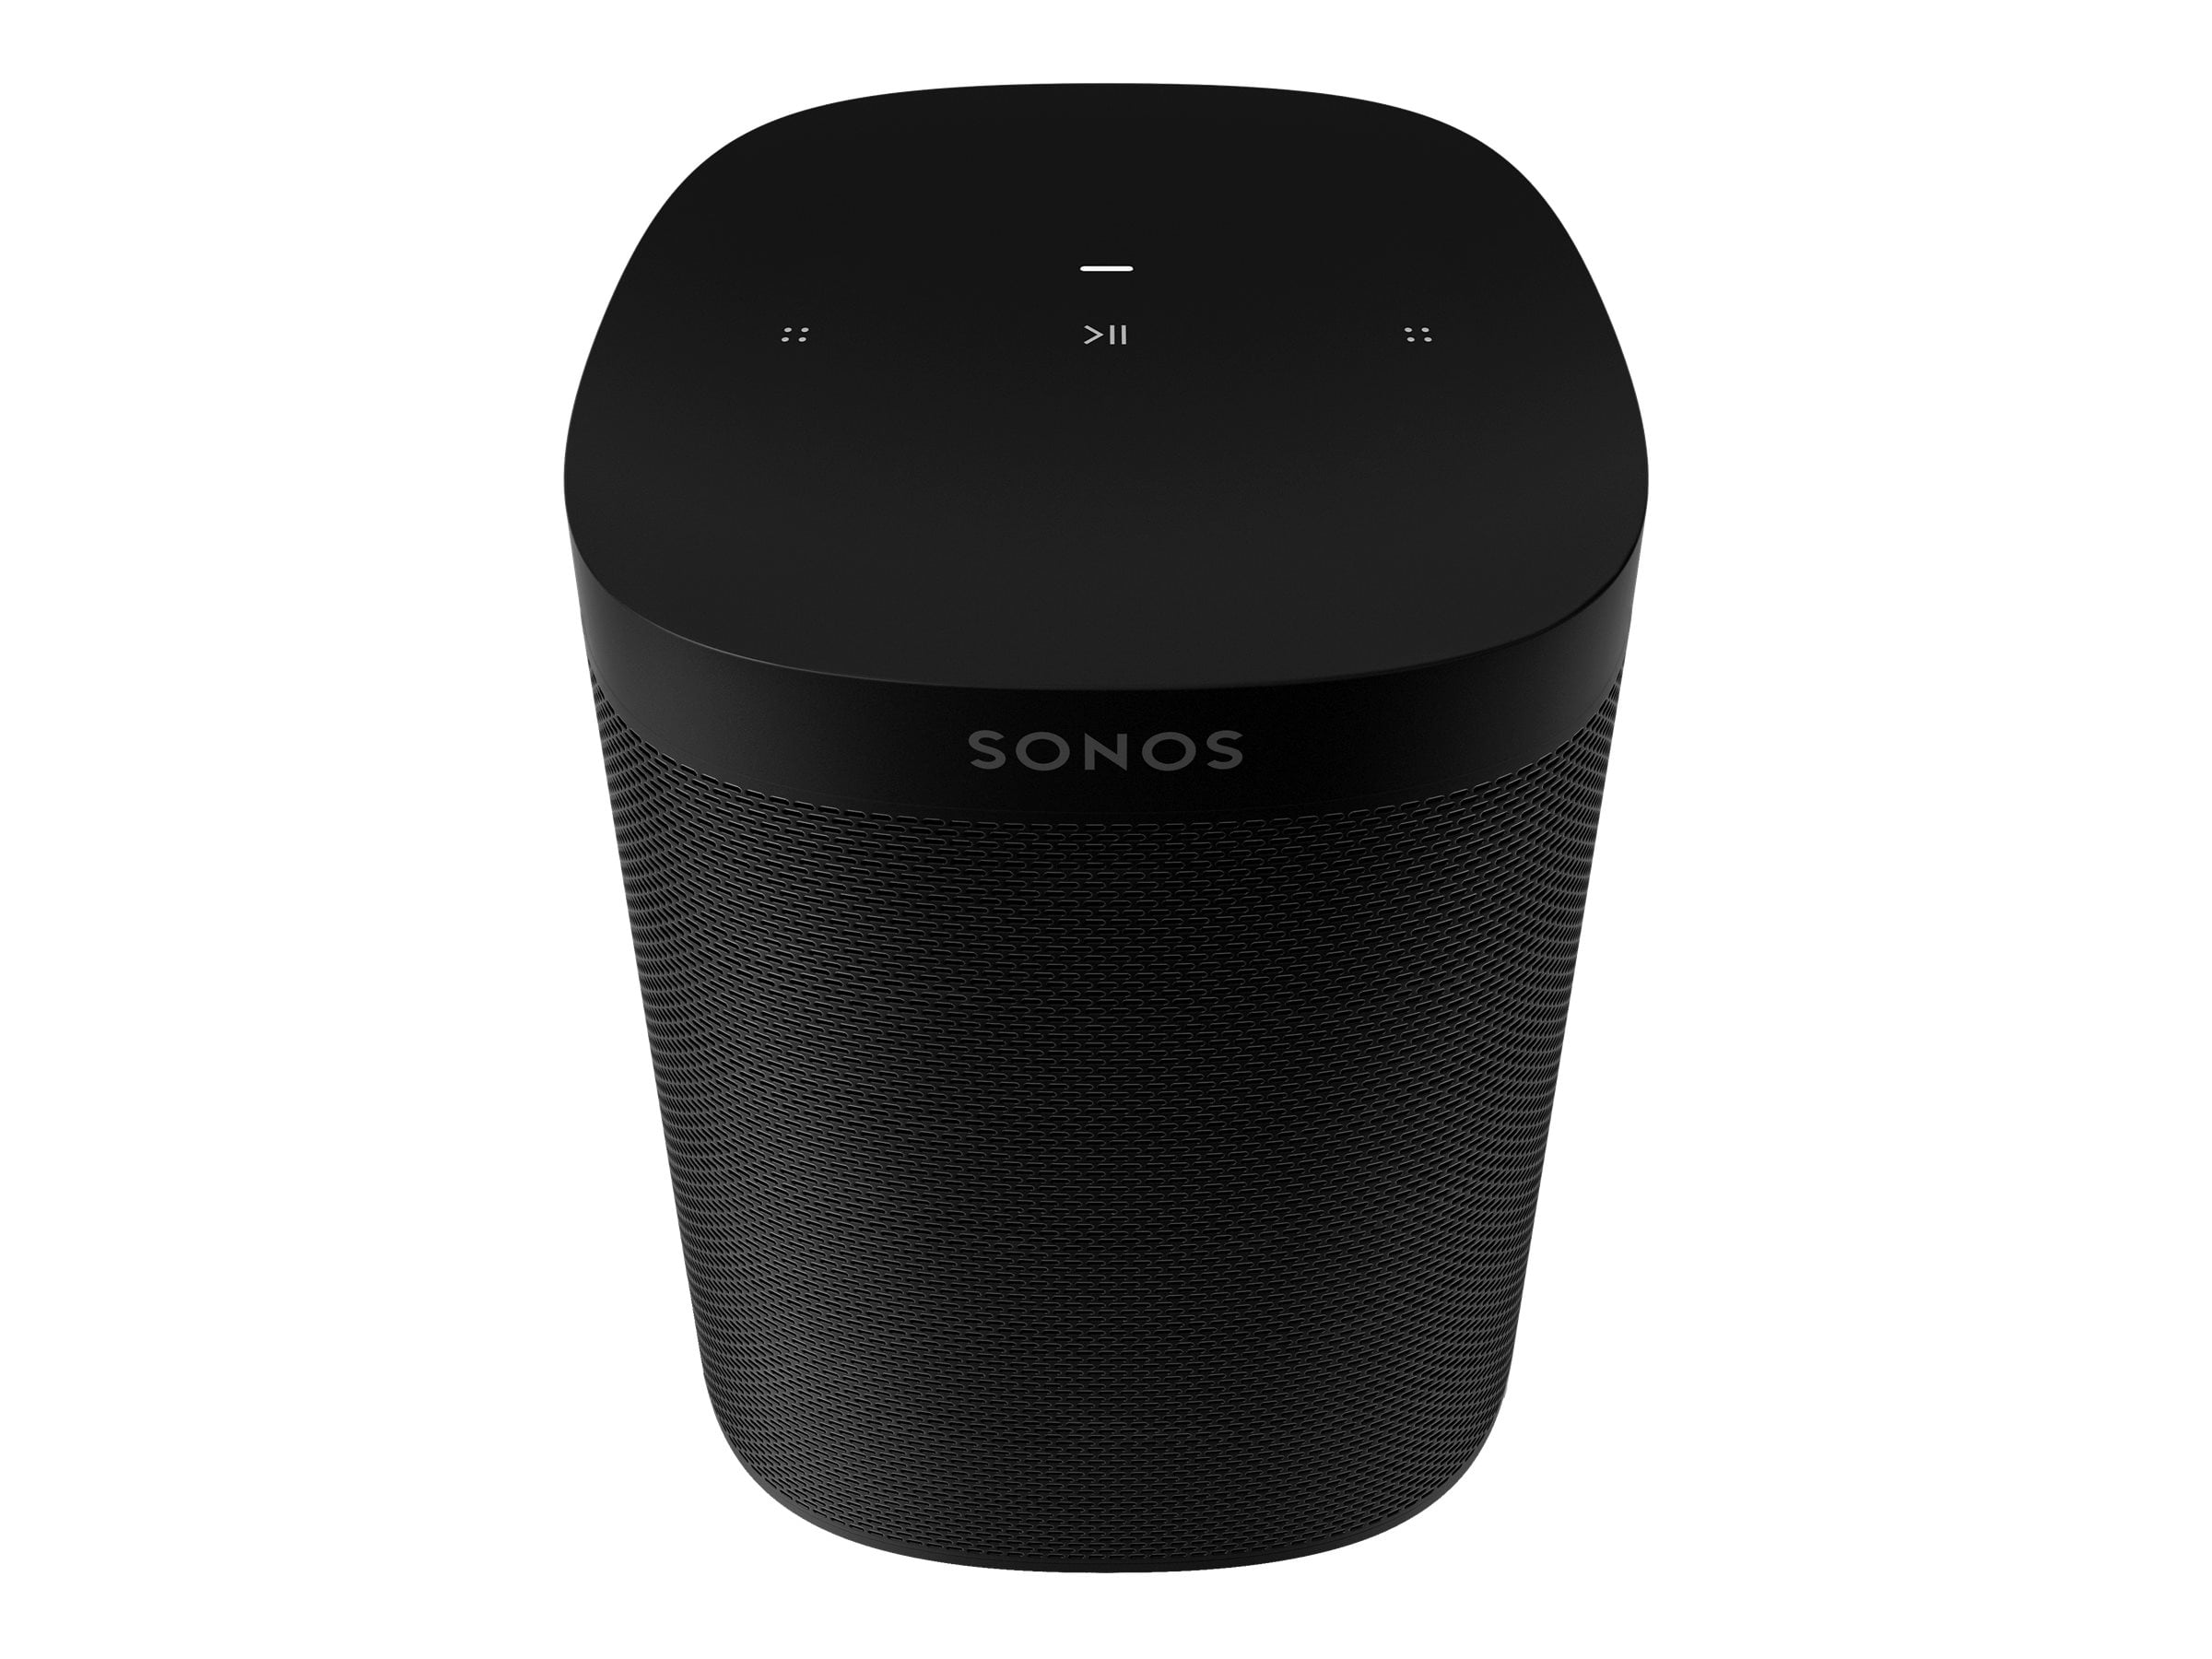 trimme Højttaler ondsindet Sonos One SL - Microphone-Free Smart Speaker Black - Walmart.com